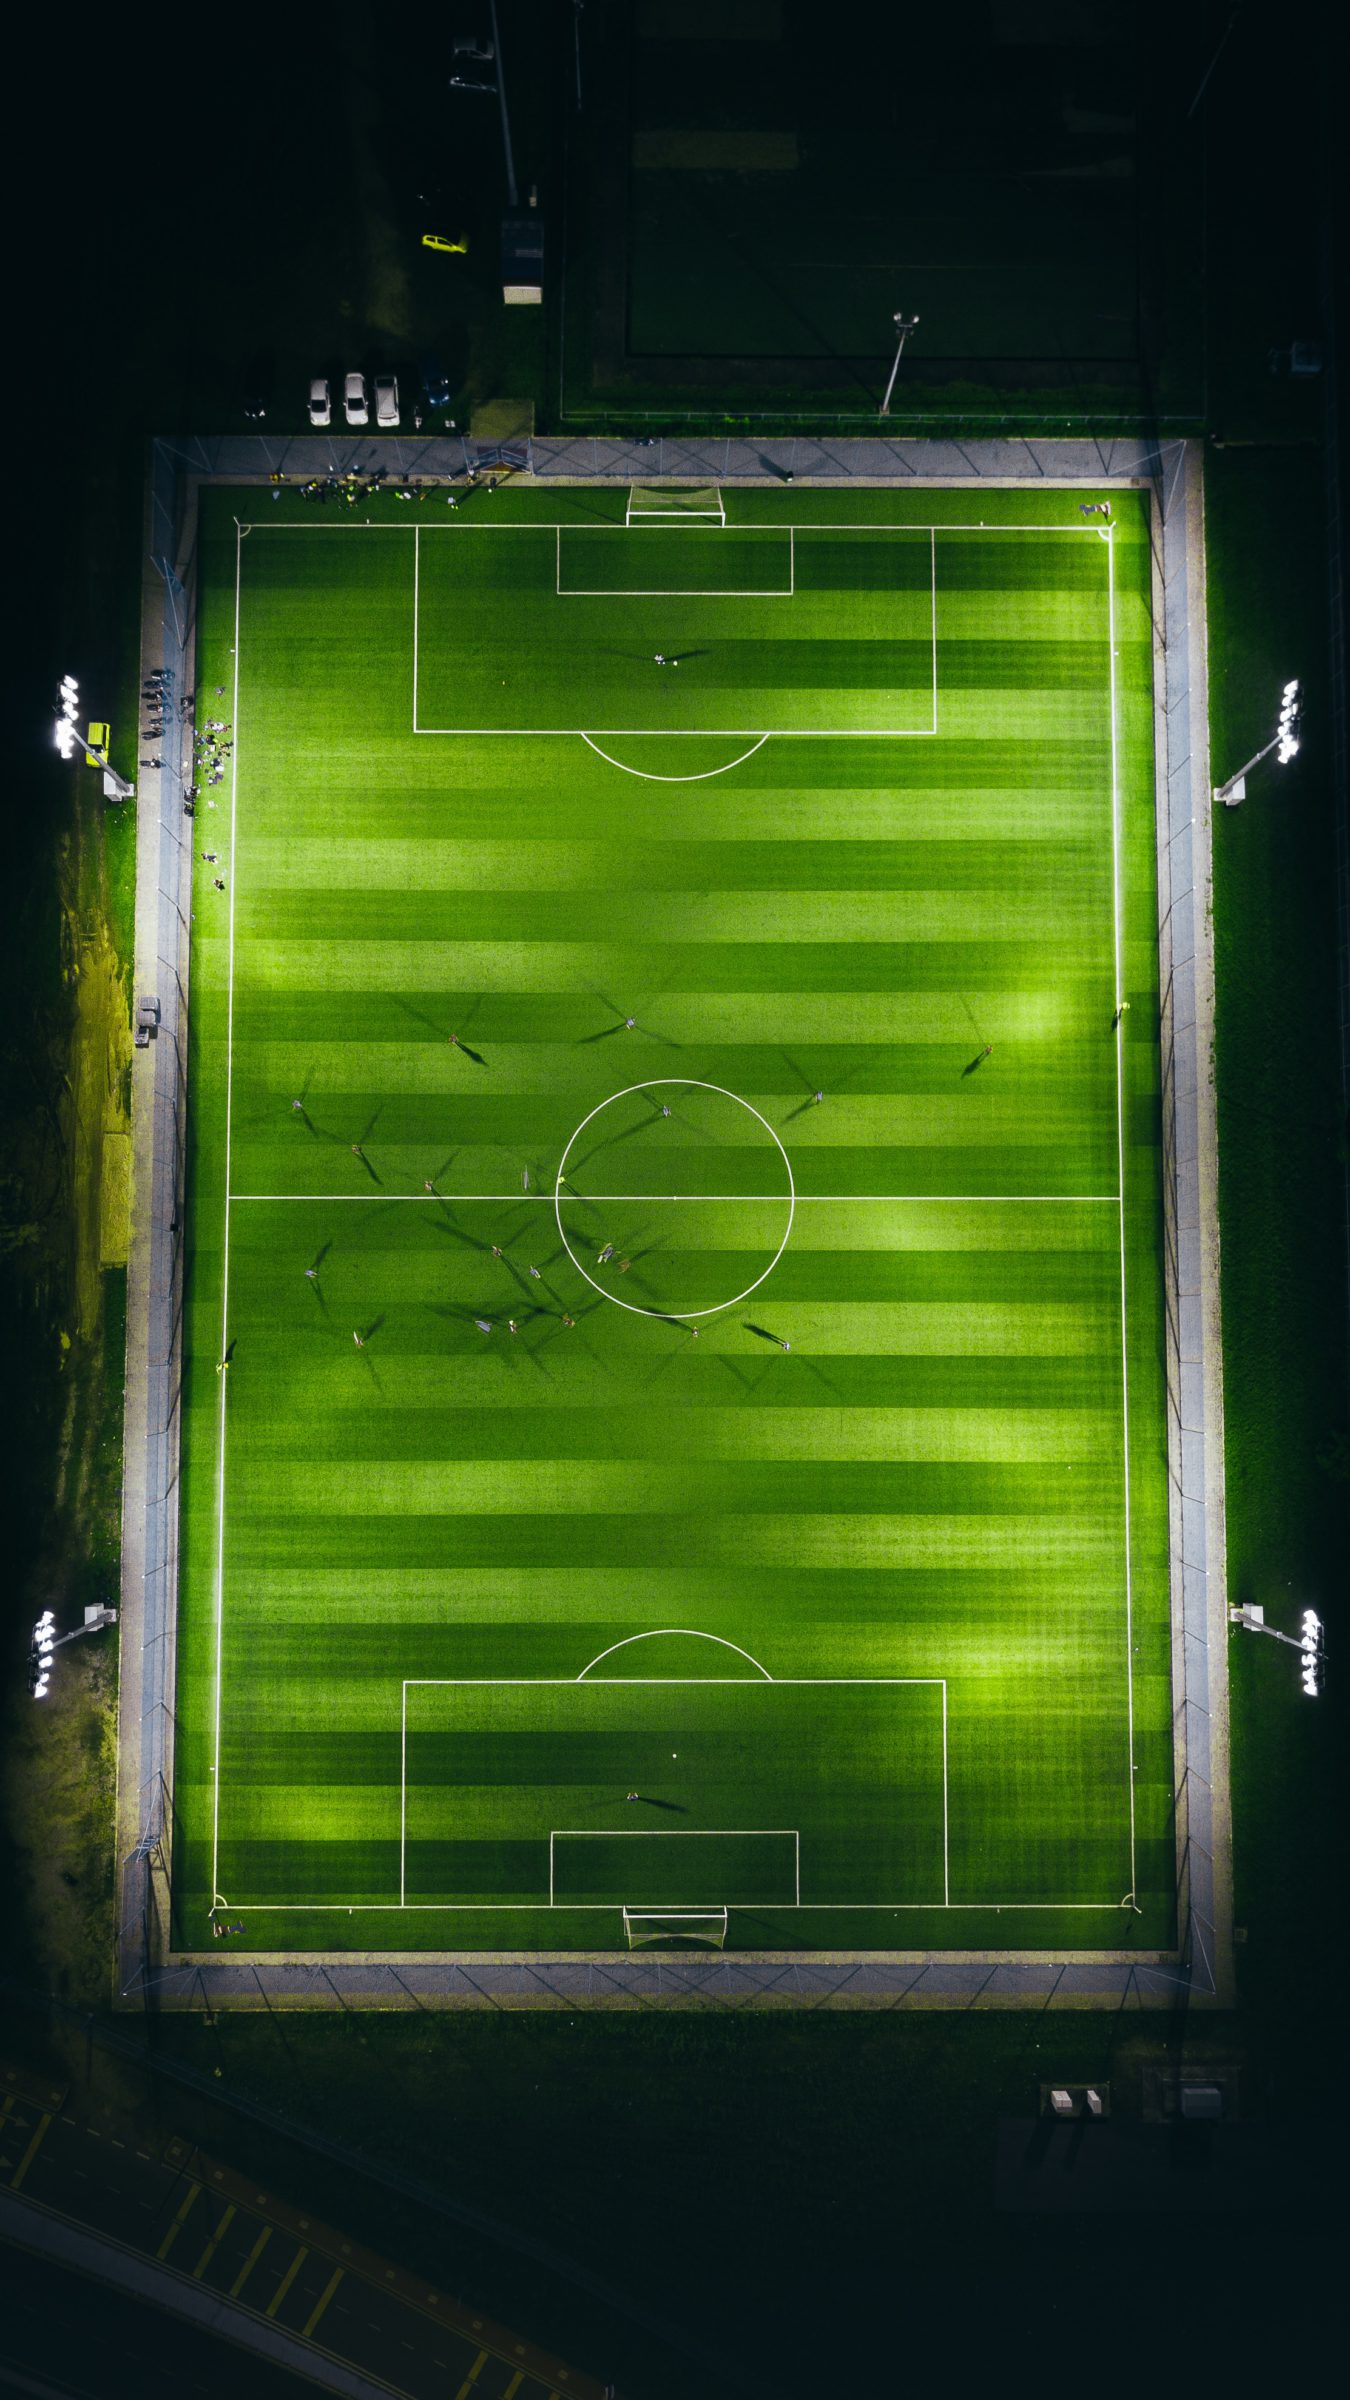 Night soccer field